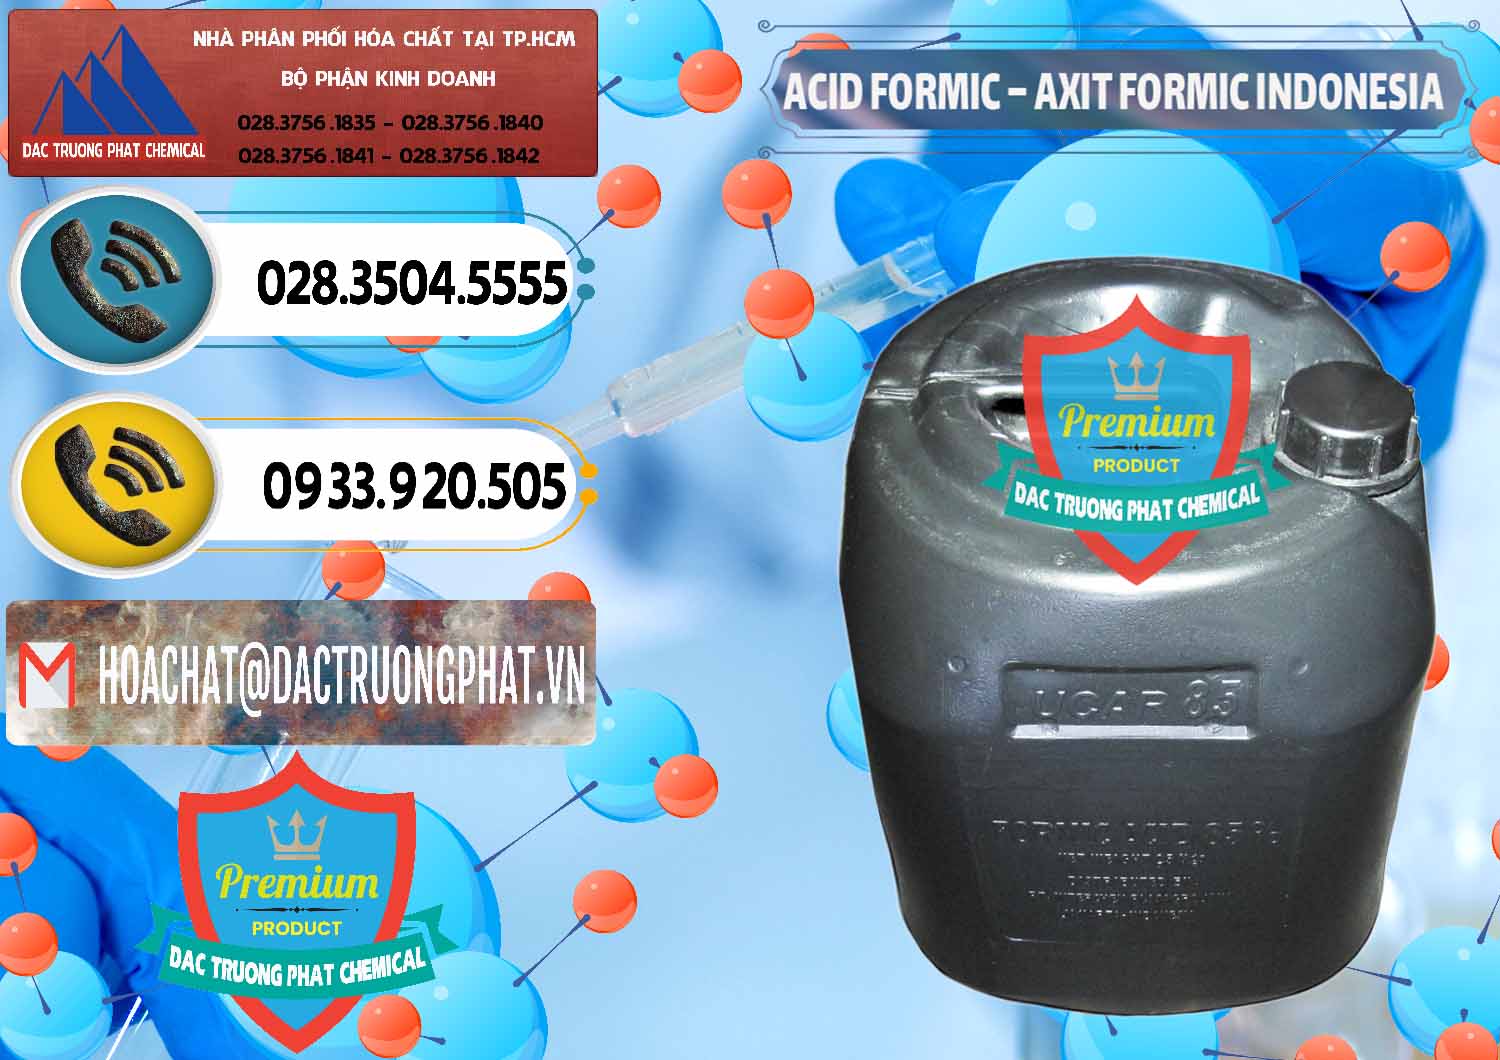 Bán ( cung ứng ) Acid Formic - Axit Formic Indonesia - 0026 - Nơi phân phối - cung cấp hóa chất tại TP.HCM - hoachatdetnhuom.vn